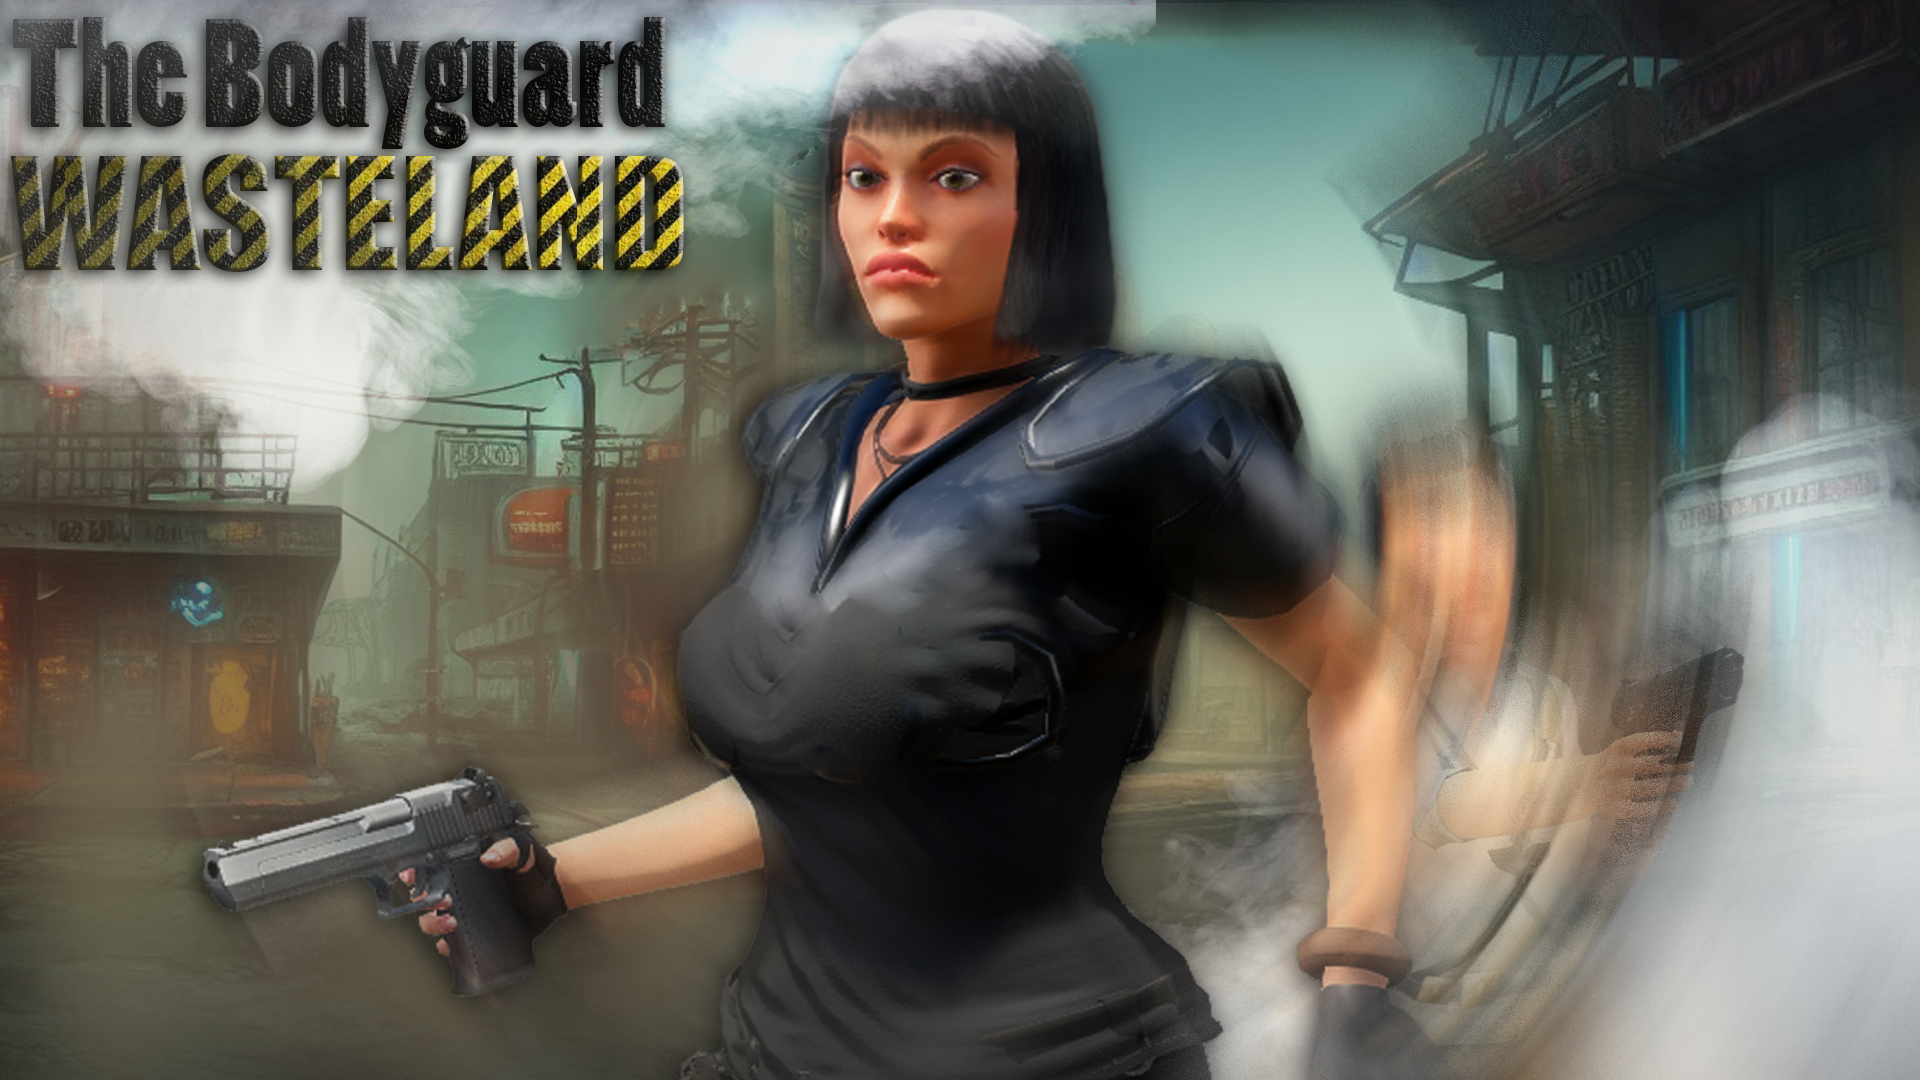 The Bodyguard - Wasteland